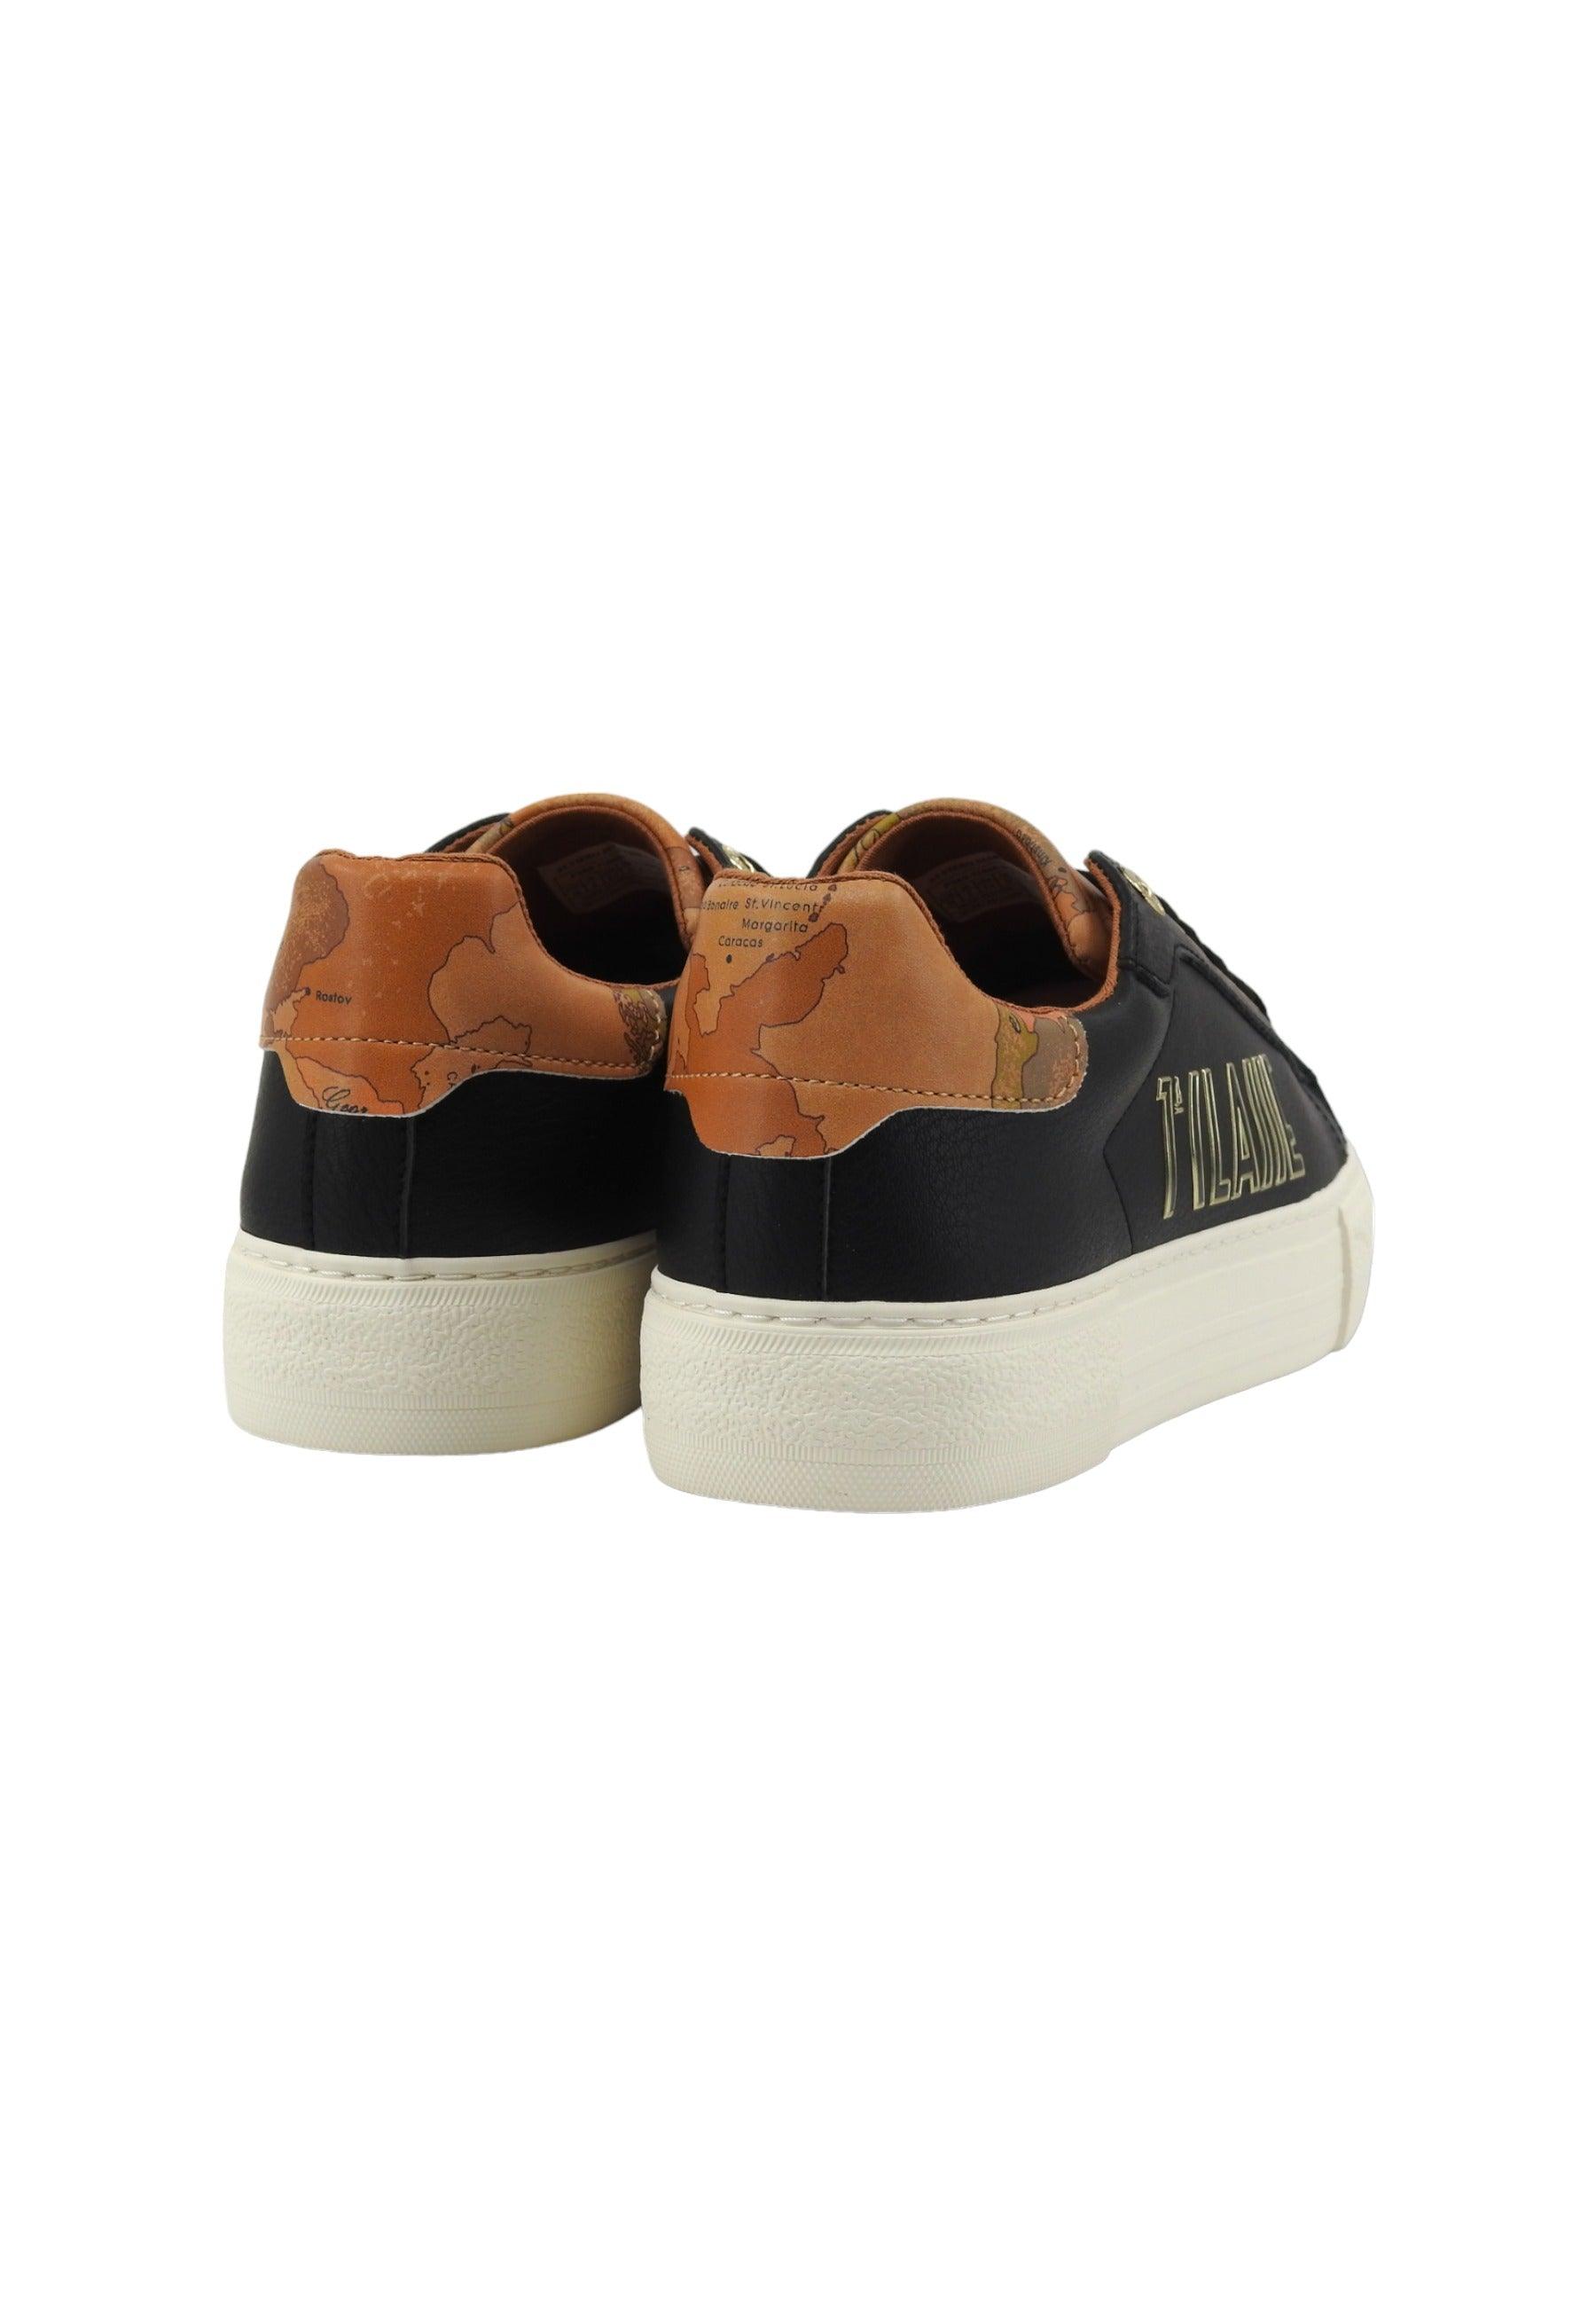 ALVIERO MARTINI 1° CLASSE Sneaker Donna Black Geo Beige N1665-0193 - Sandrini Calzature e Abbigliamento